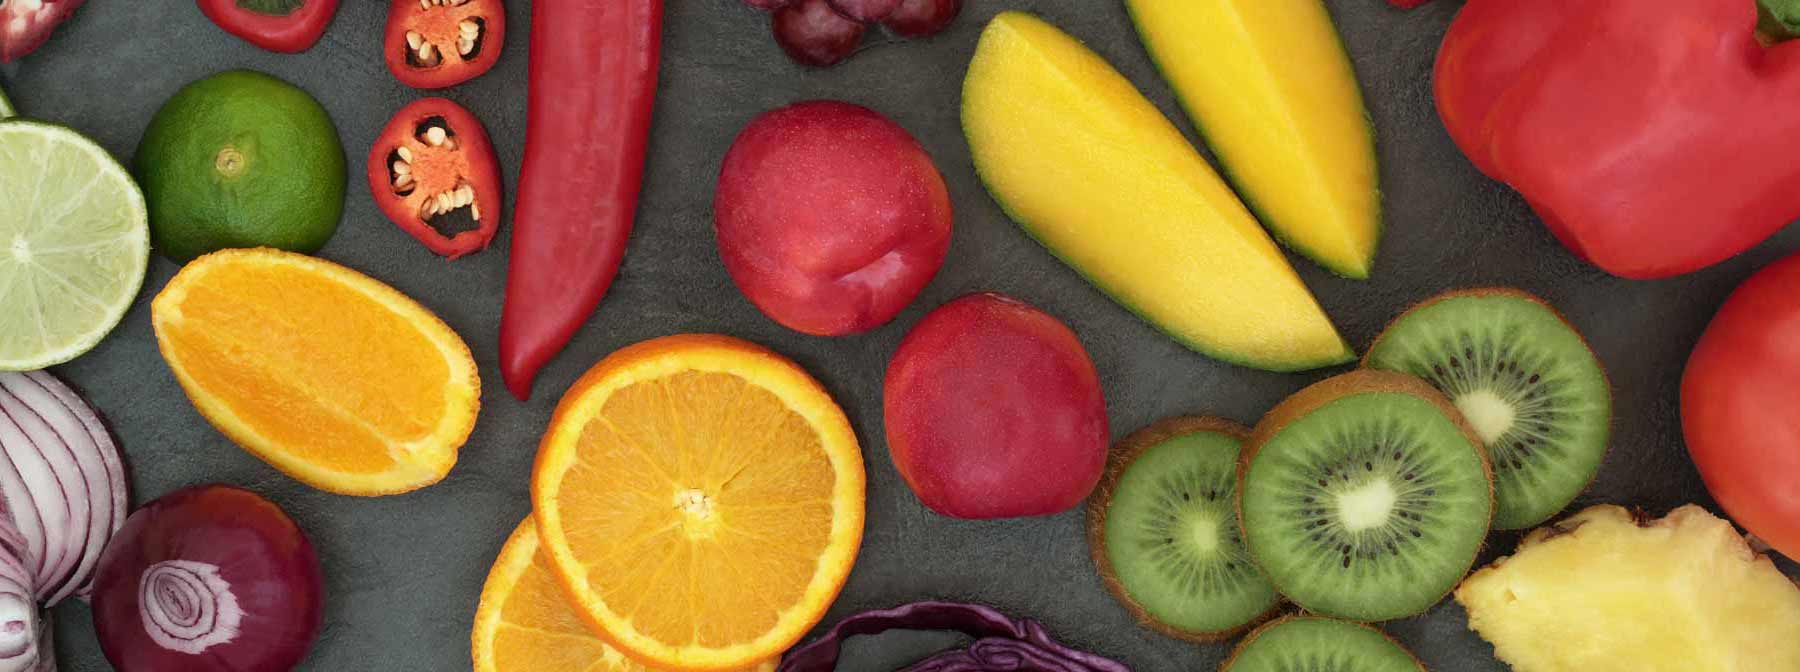 Λαχανικά Κατεψυγμένα vs Φρέσκα : τι να επιλέξω;